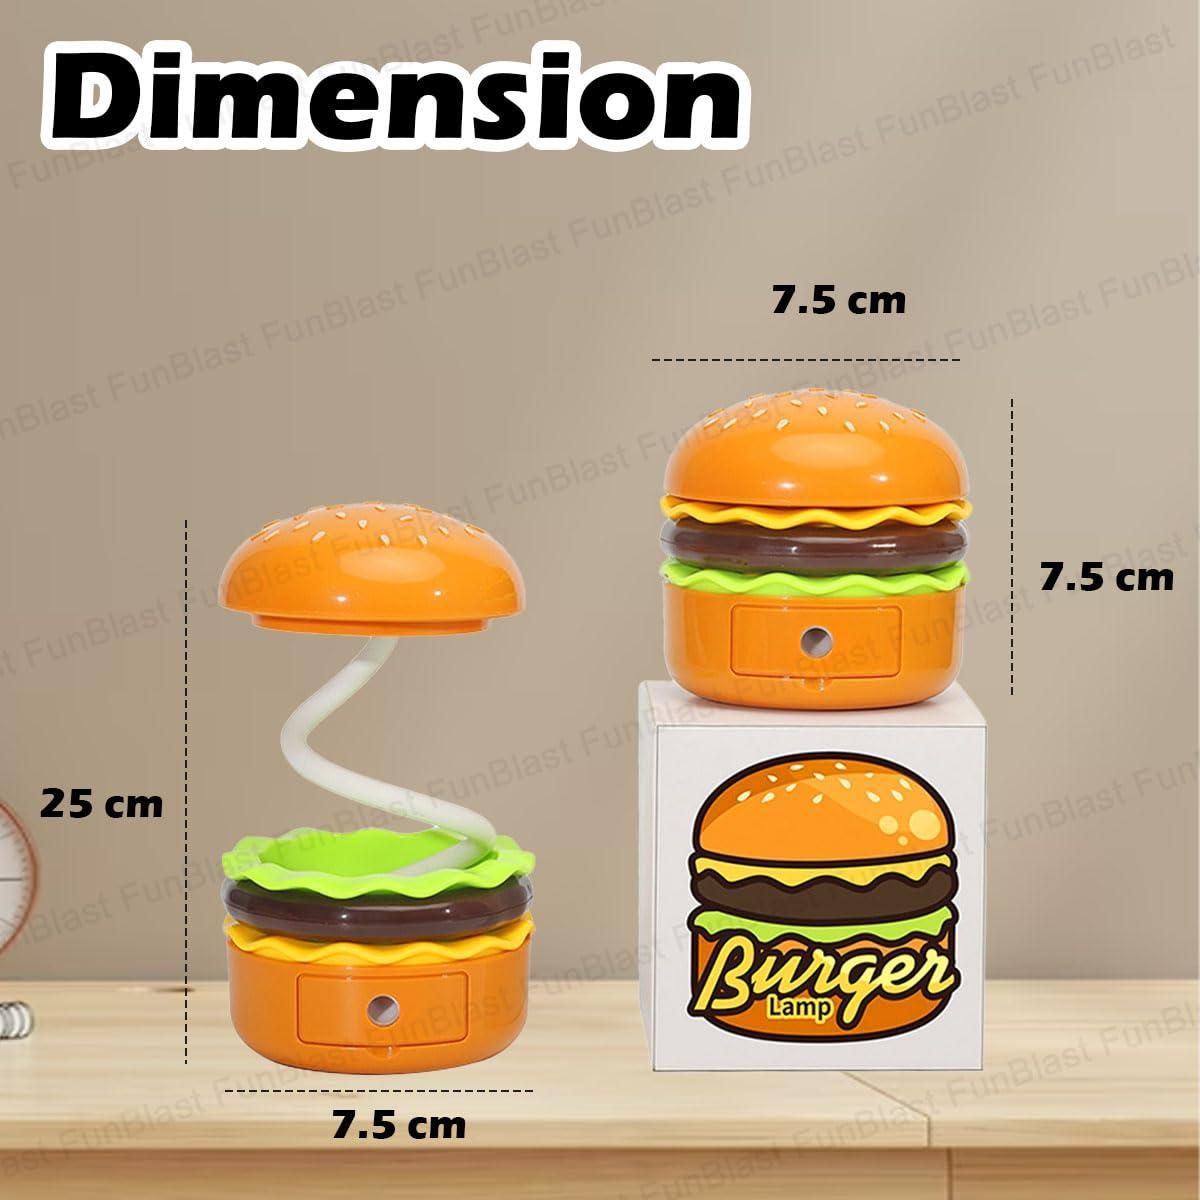 Burger Design Desk Light for Kids & Adults